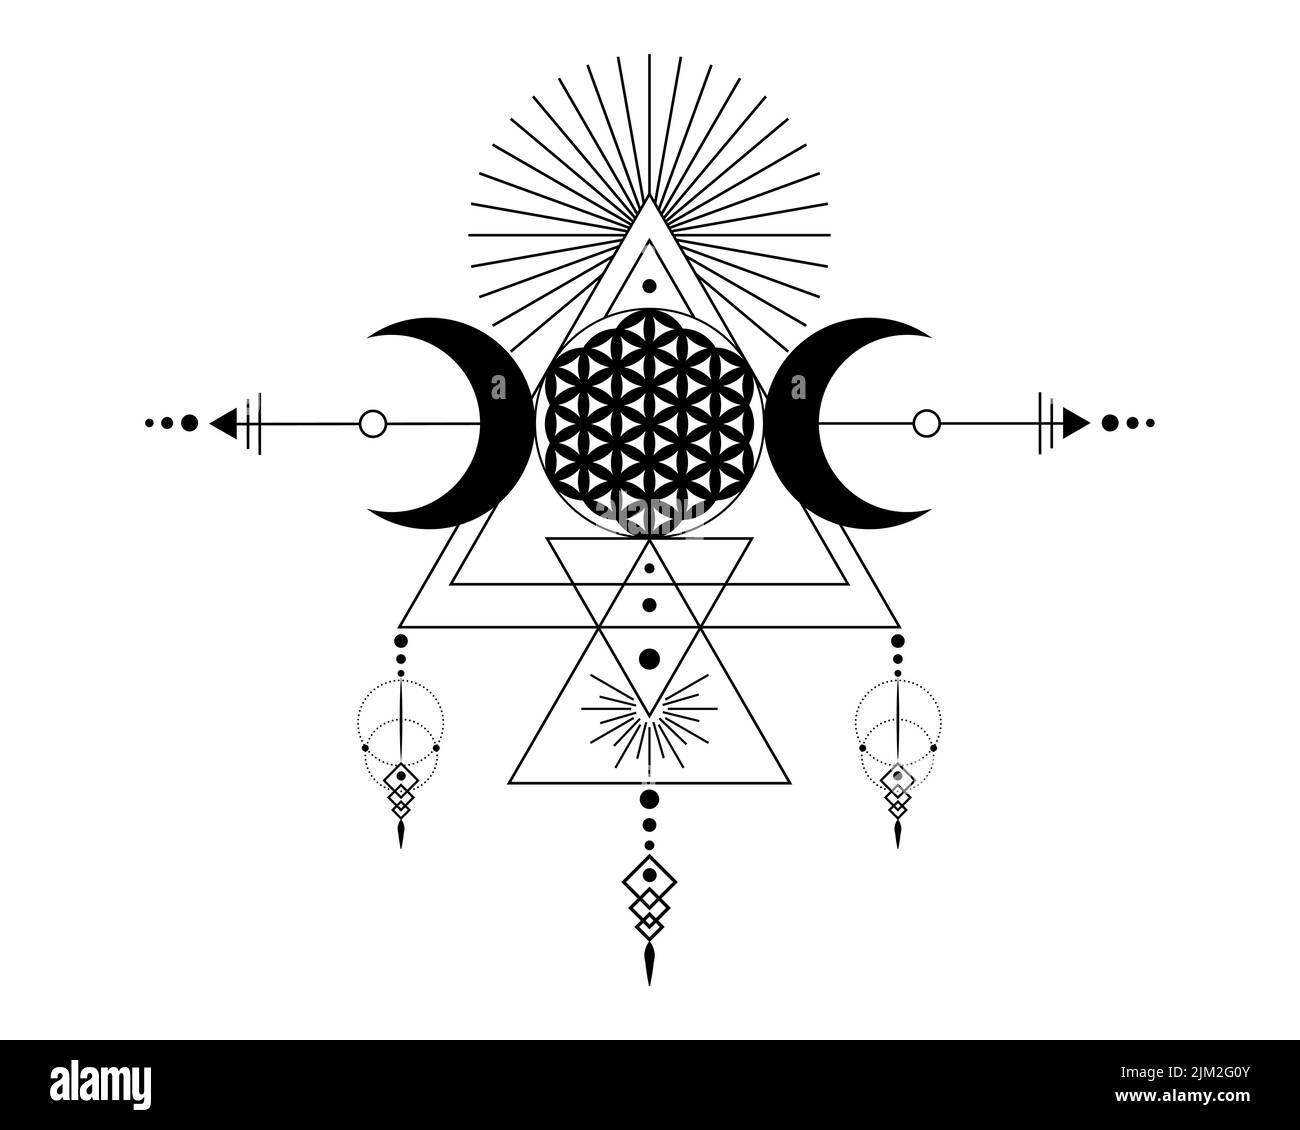 Triplice Dea e Fiore della vita, geometria Sacra, triangoli tribali, fasi lunari in stile Shaman boho. Tatuaggio, astrologia, alchimia e simboli magici. Illustrazione Vettoriale